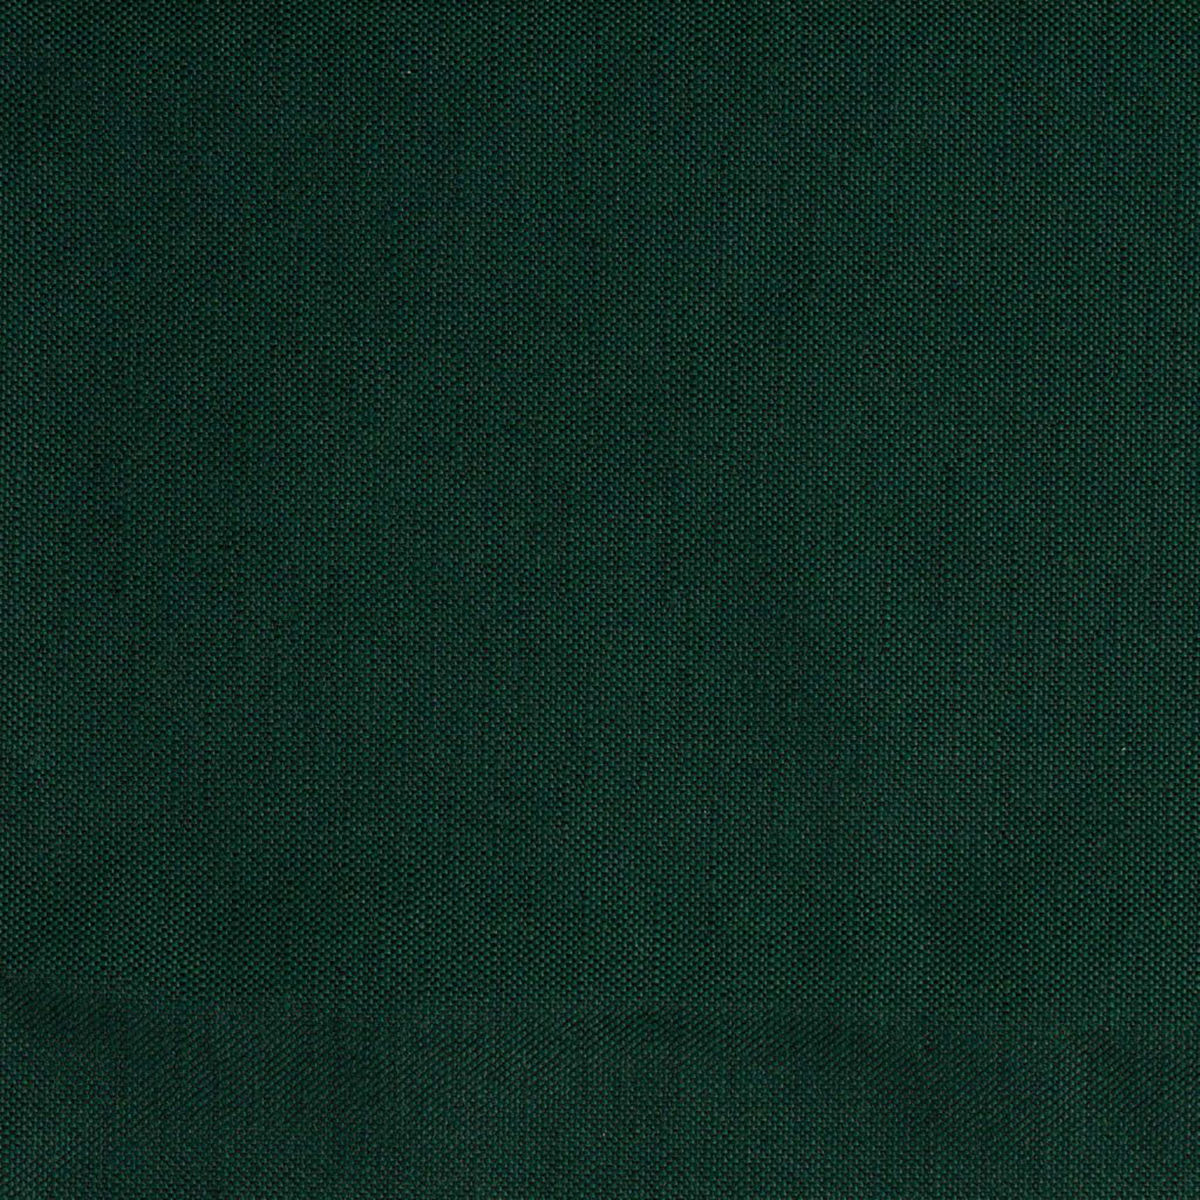 linen mallard dark cushion for croquet teak arm chair thumbnail image